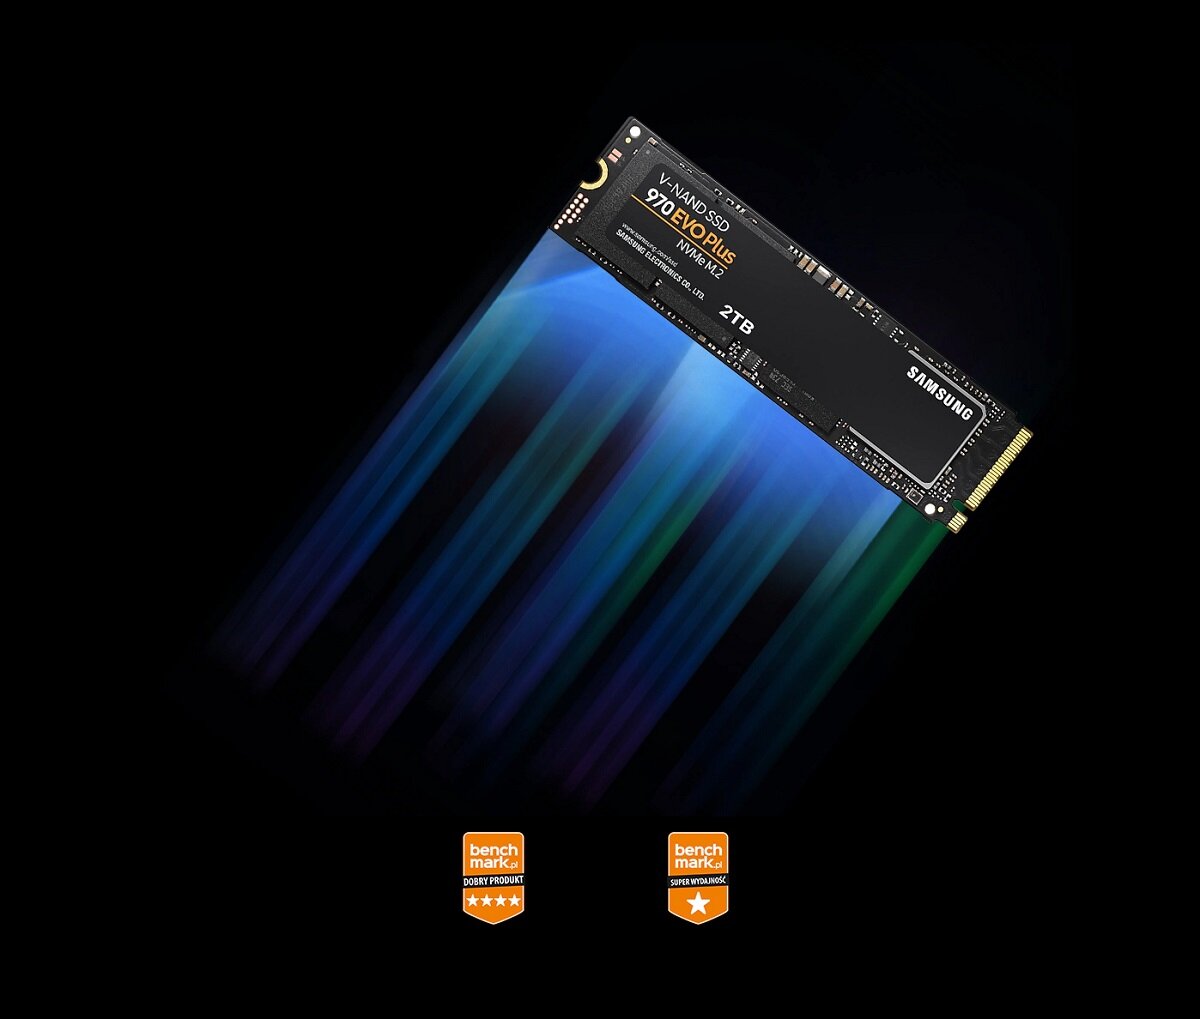 Dysk SSD Samsung 970 EVO Plus 1TB M.2 pod skosem z grafiką pokazującą prędkość